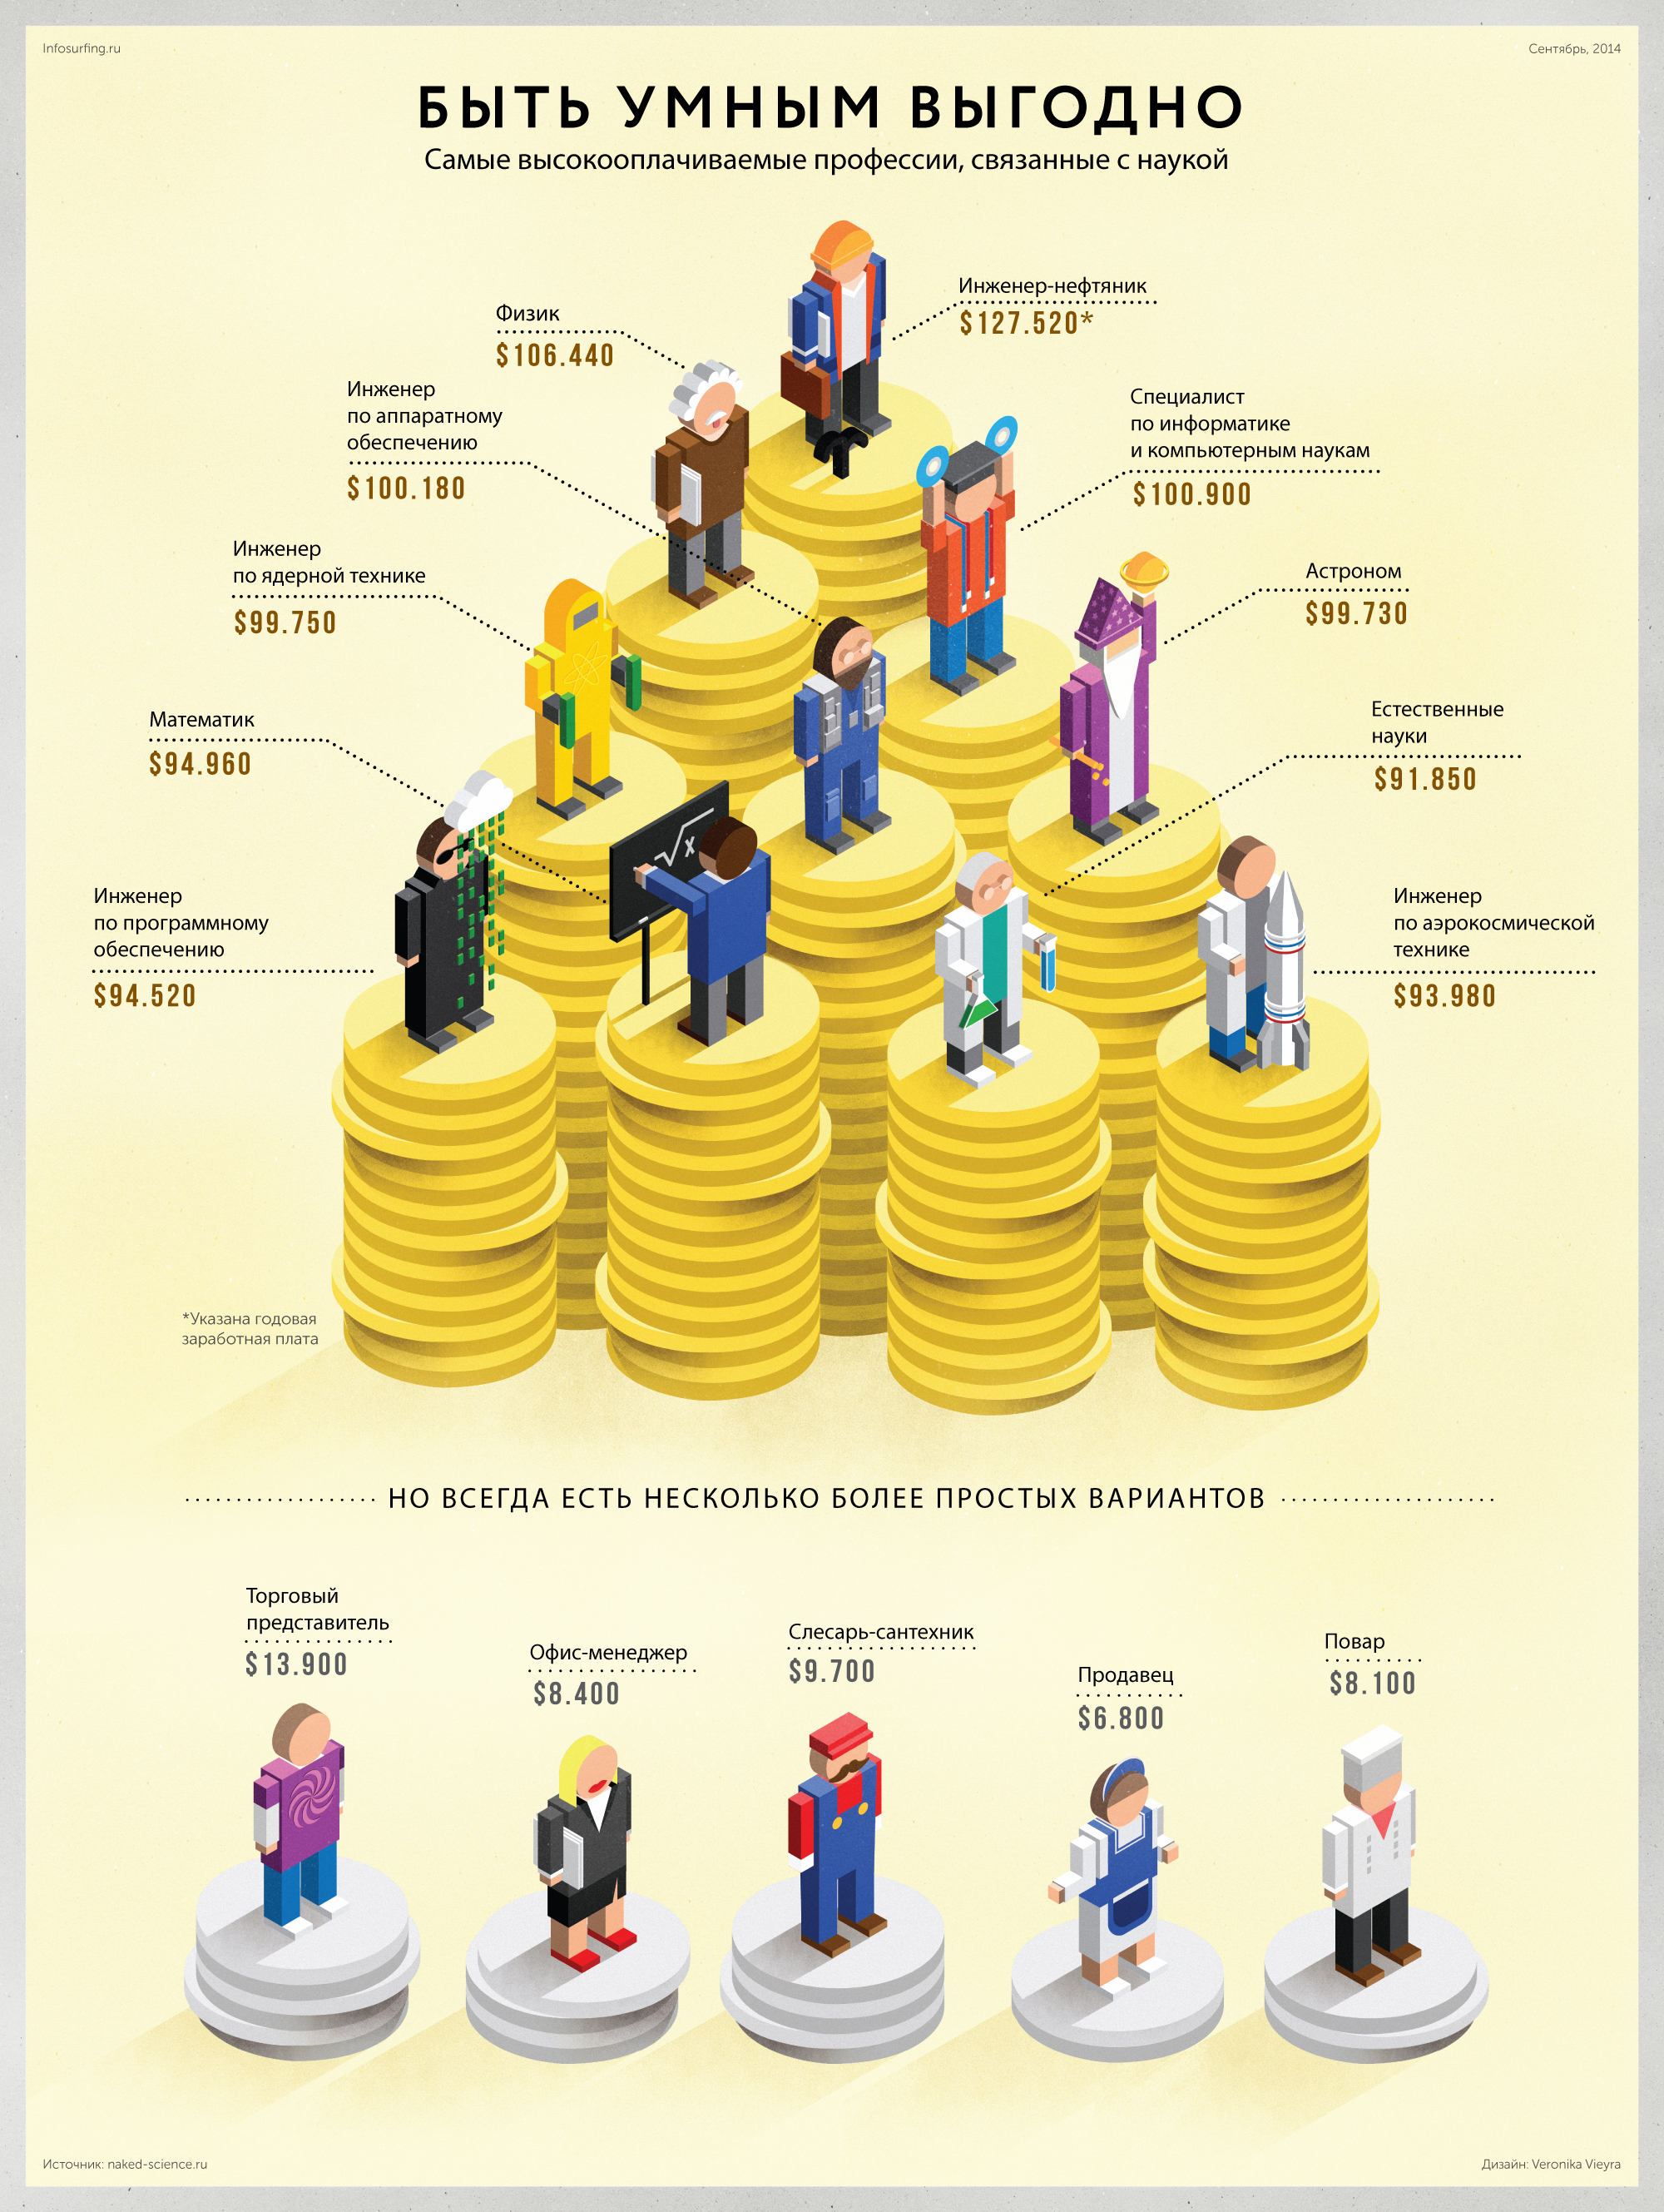 10 самых высокооплачиваемых профессий в мире